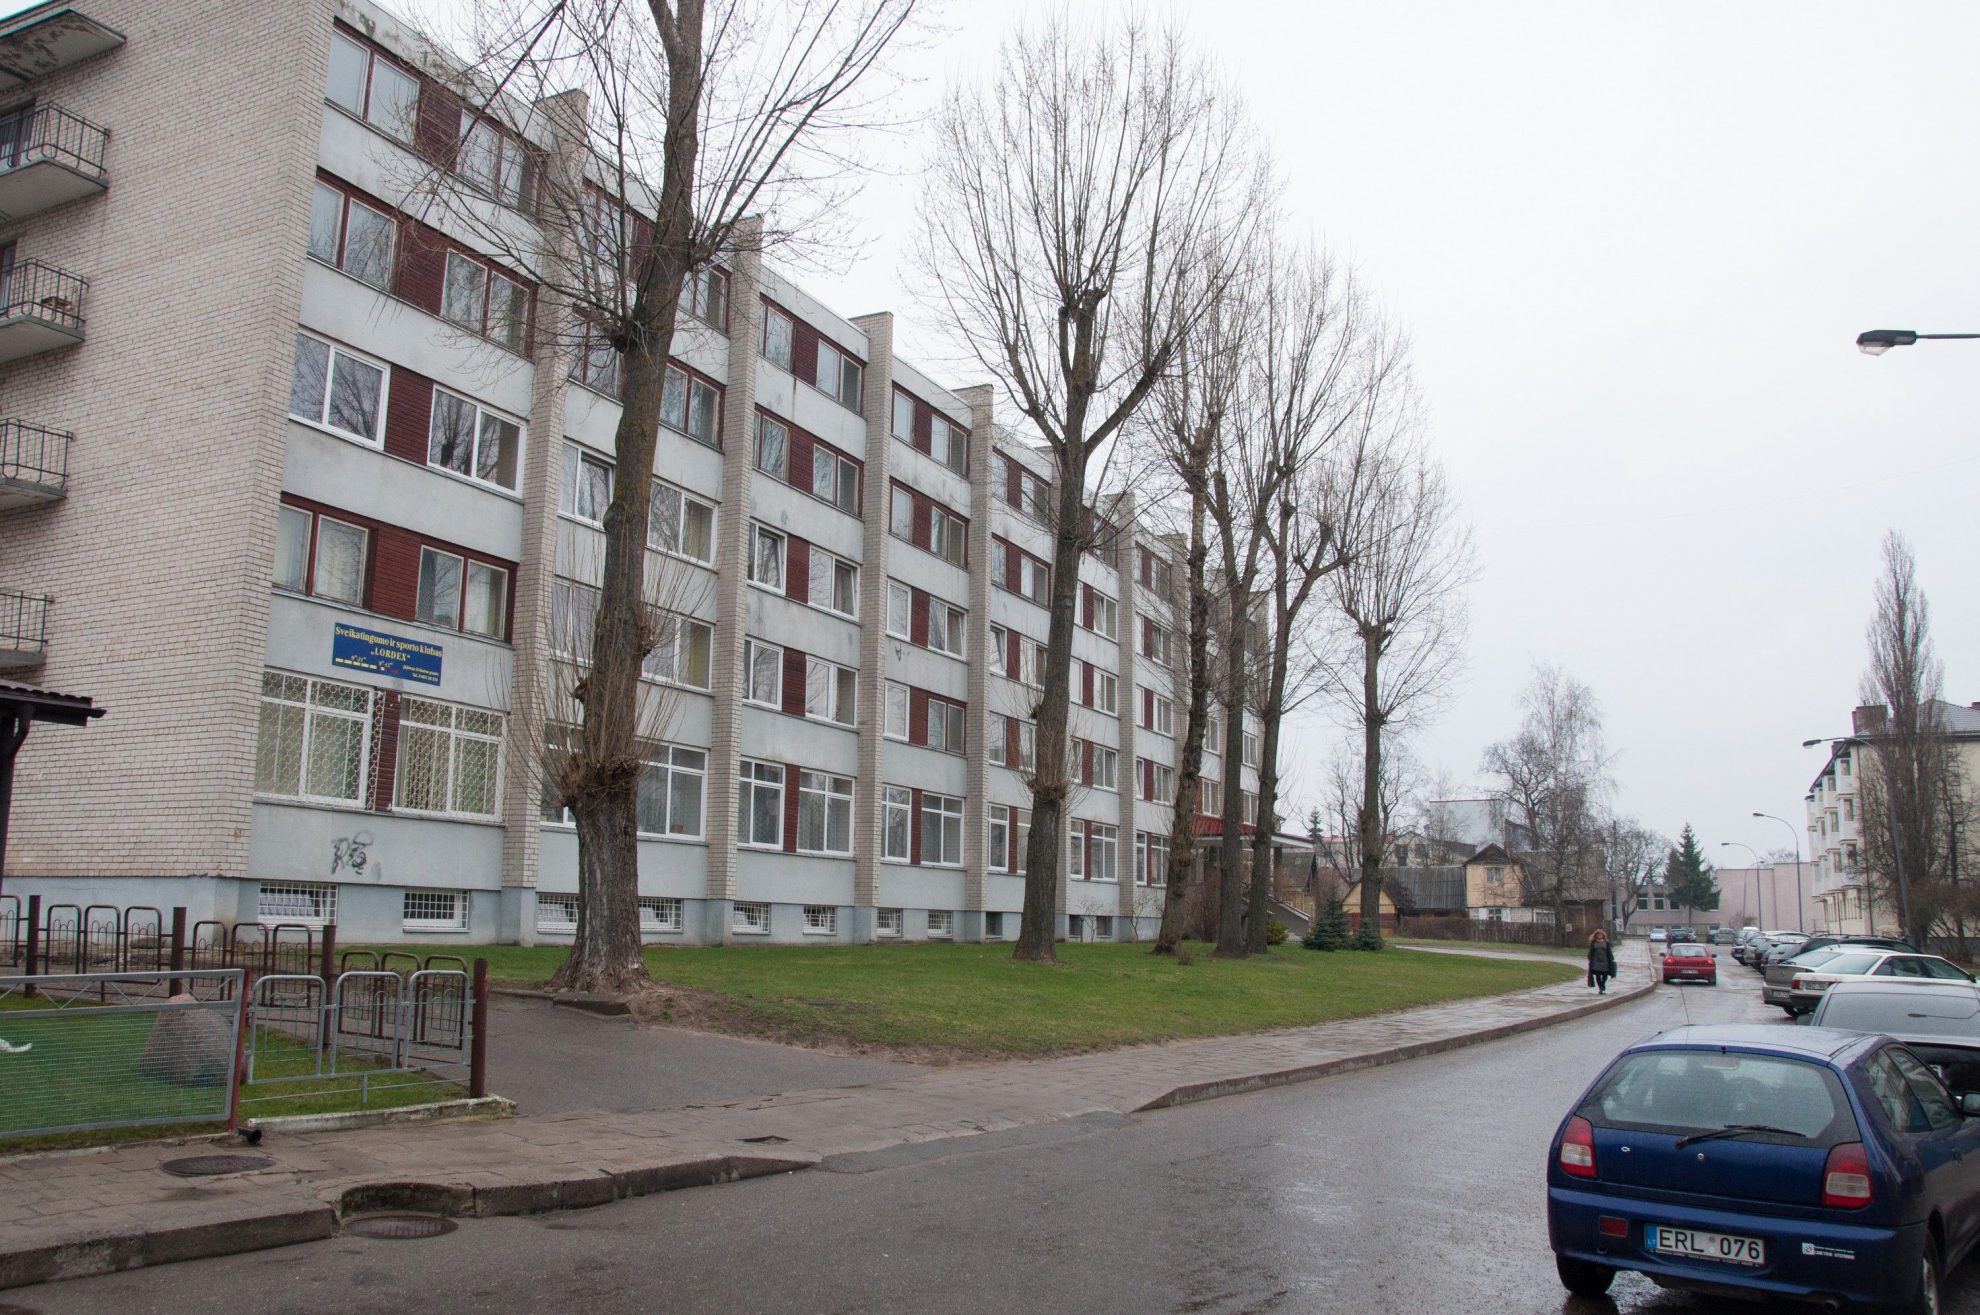 Panevėžio miesto savivaldybės taryba uždegė žalią šviesą įvairių nuomonių sulaukusiam projektui - miesto centre įrenginės socialinį daugiabutį.